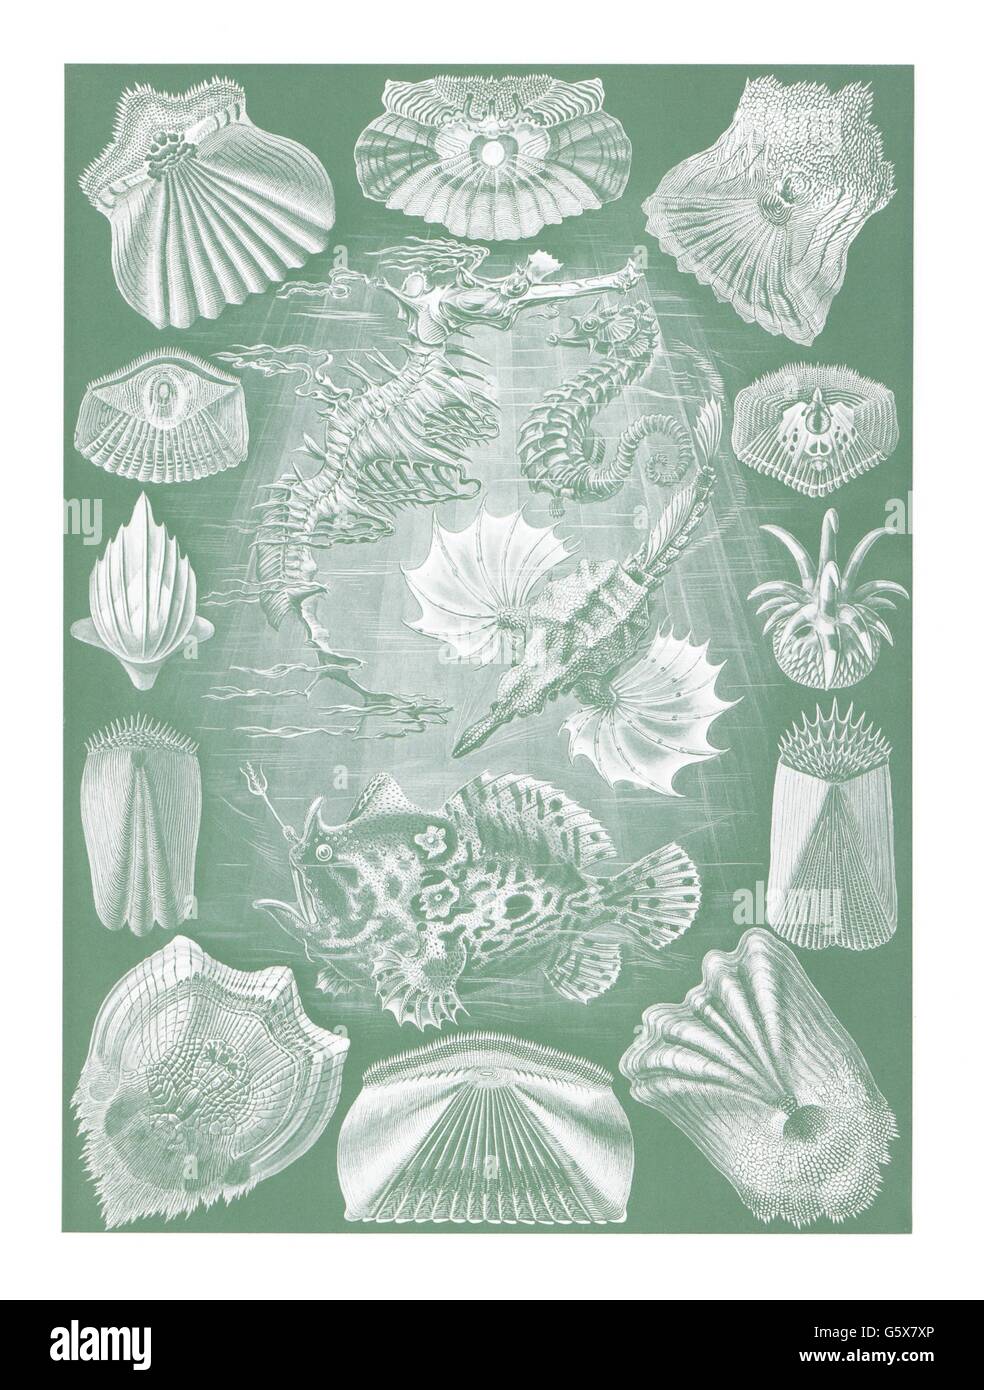 zoologia / Animali, pesci ossei (Osteichthyes), litografia a colori, su: Ernst Haeckel, 'Kunstformen der Natur', Leipzig - Vienna, 1899 - 1904, diritti-aggiuntivi-clearences-non disponibili Foto Stock